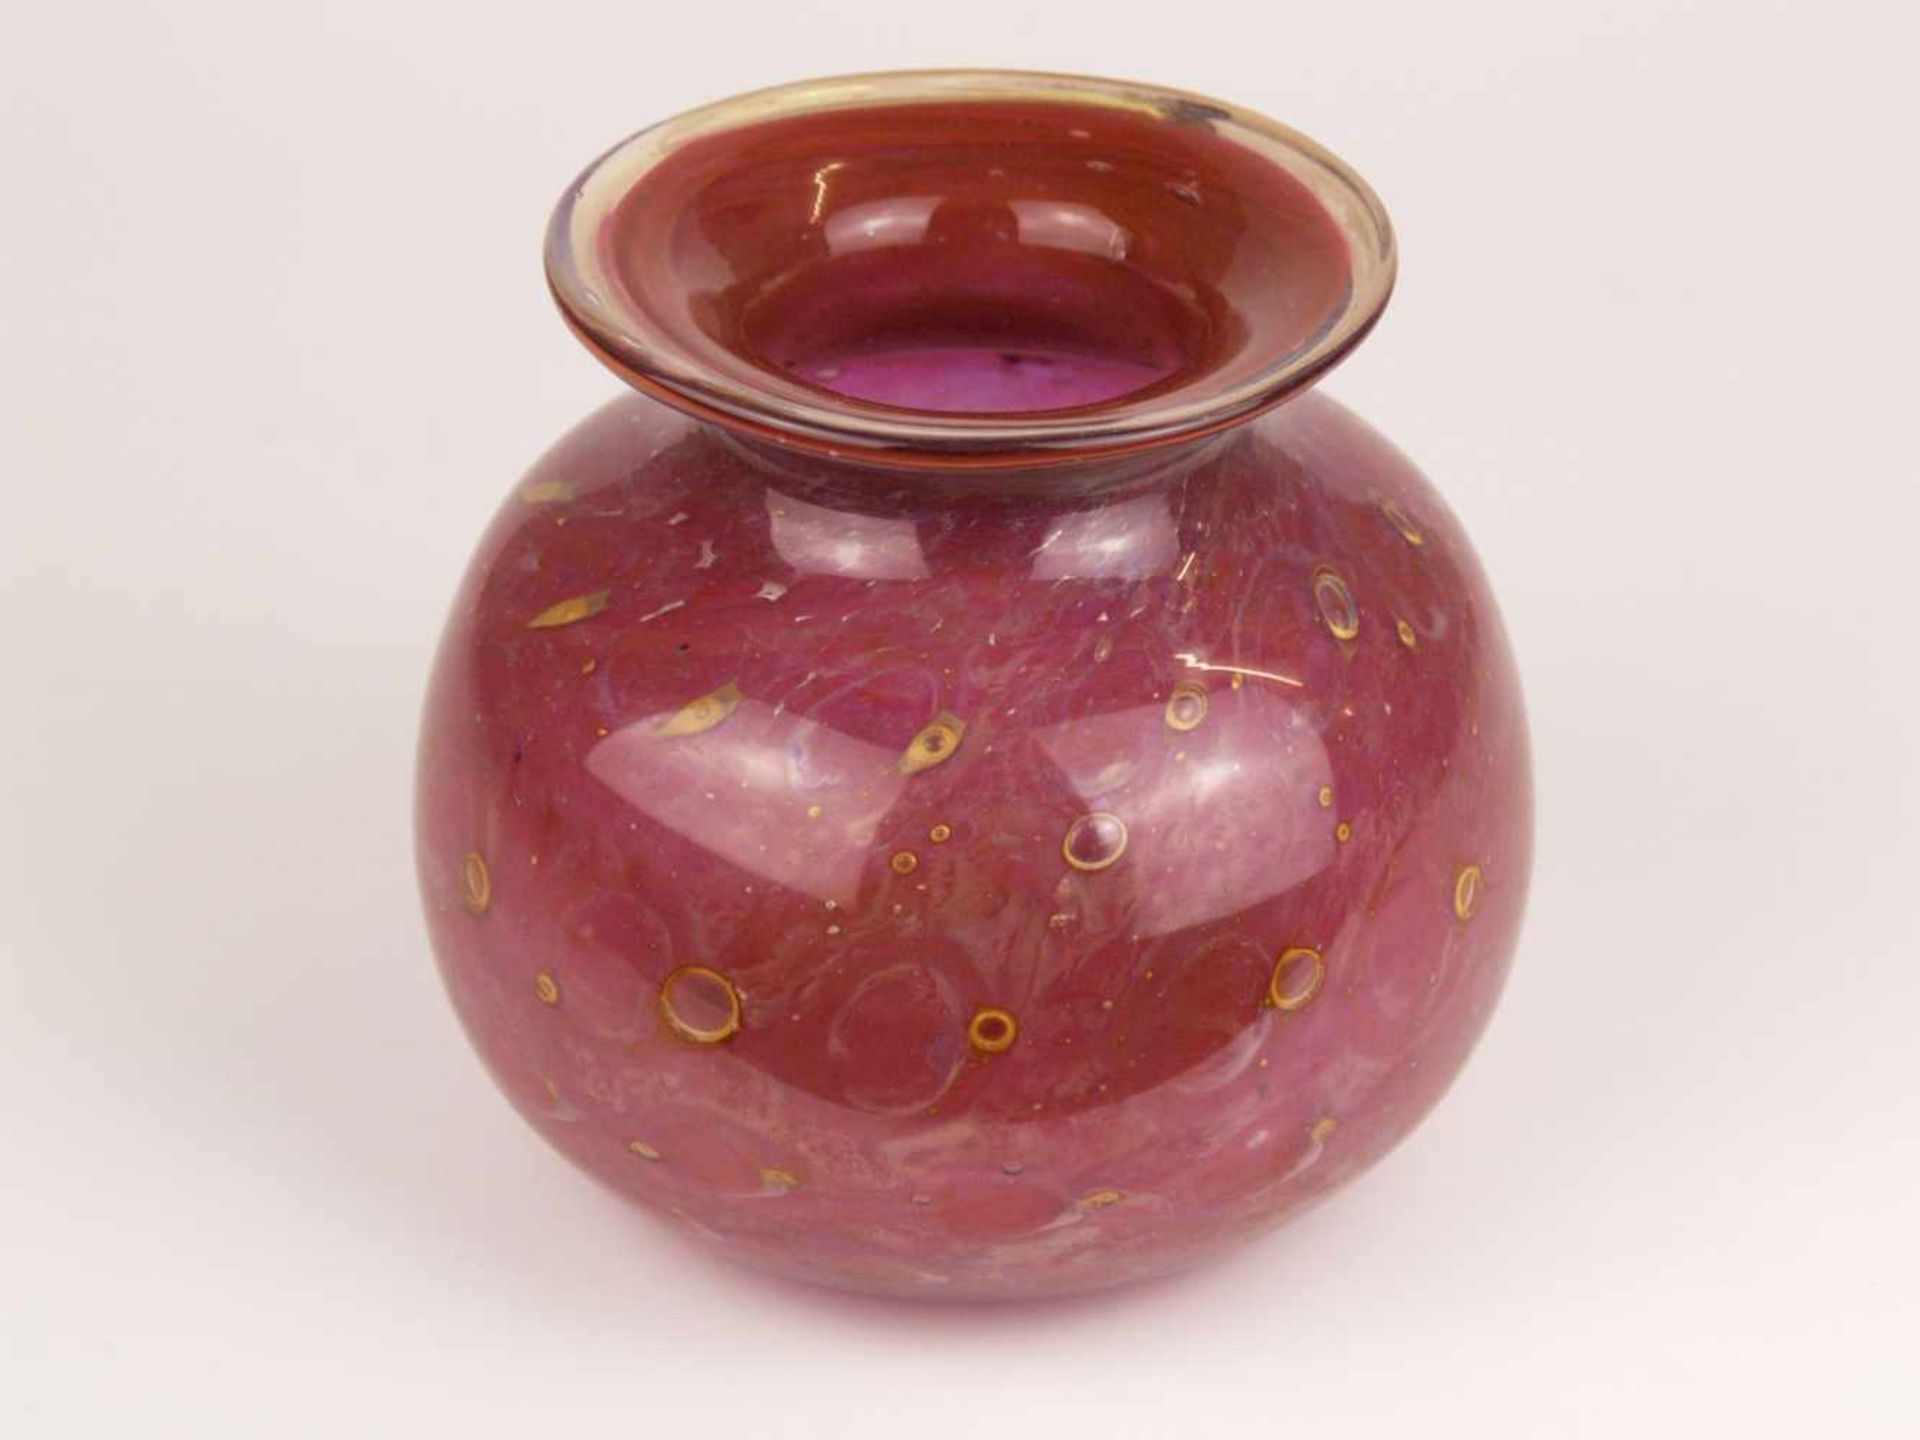 Vase - Klarglas, rosa unterfangen, eingeschmolzene goldfarbene Luftblasen, gedrückte Kugelform,